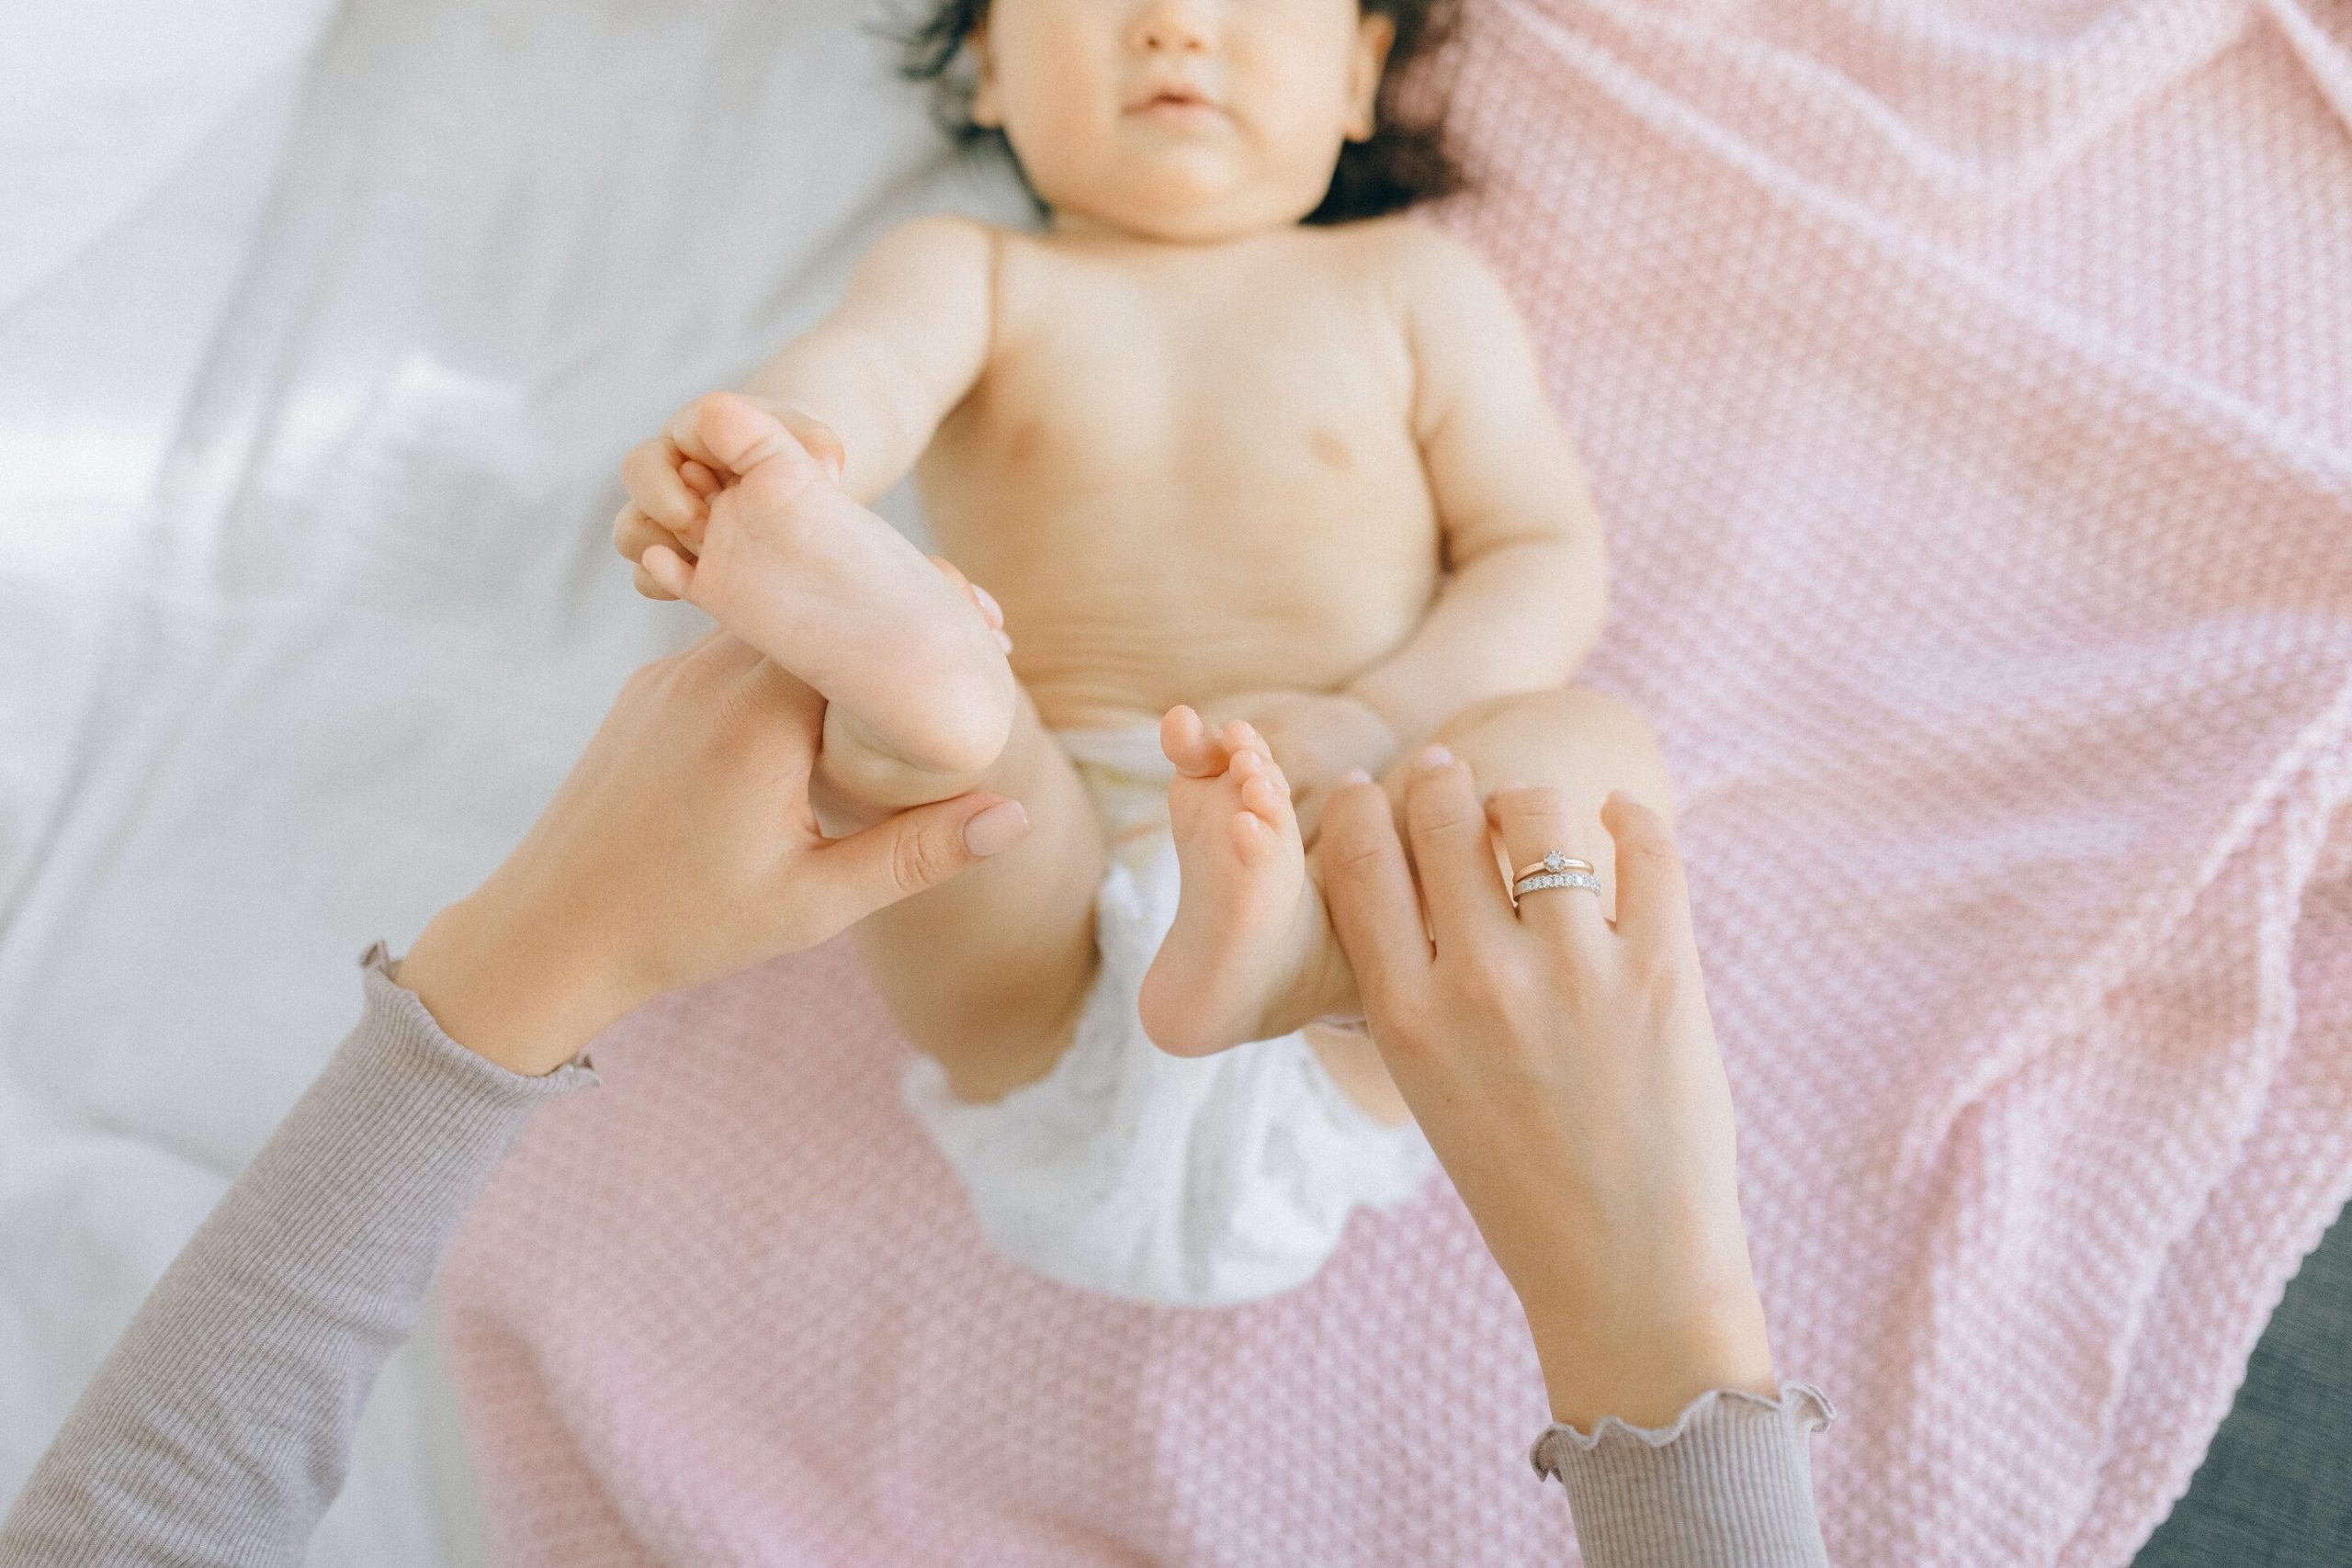 עיסוי תינוקות - איך עושים מסג' לתינוק